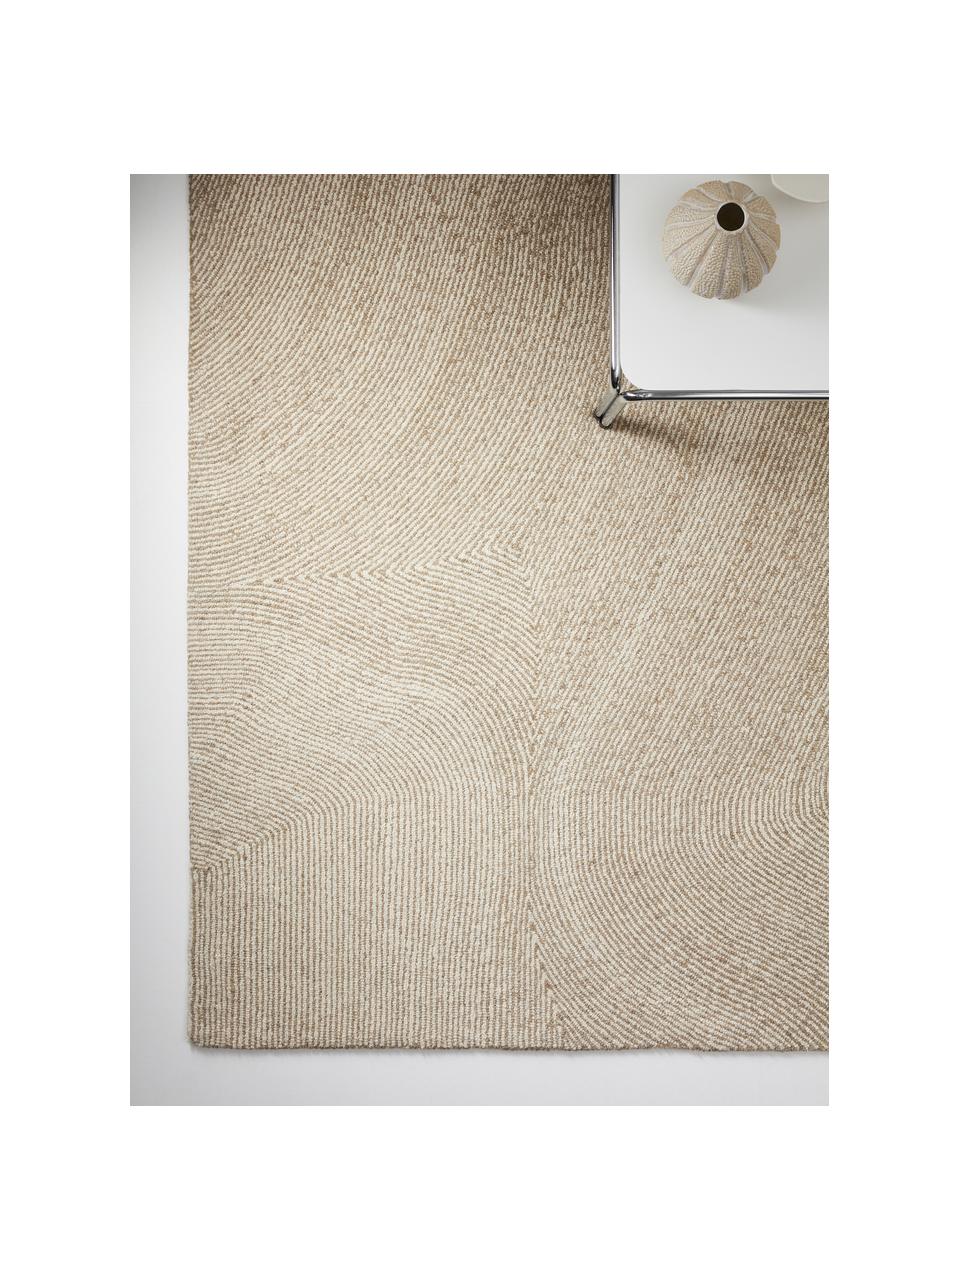 Tappeto tessuto a mano con motivo ondulato beige/bianco Canyon, 51% poliestere, 49% lana, Beige, Larg. 200 x Lung. 300 cm (taglia L)